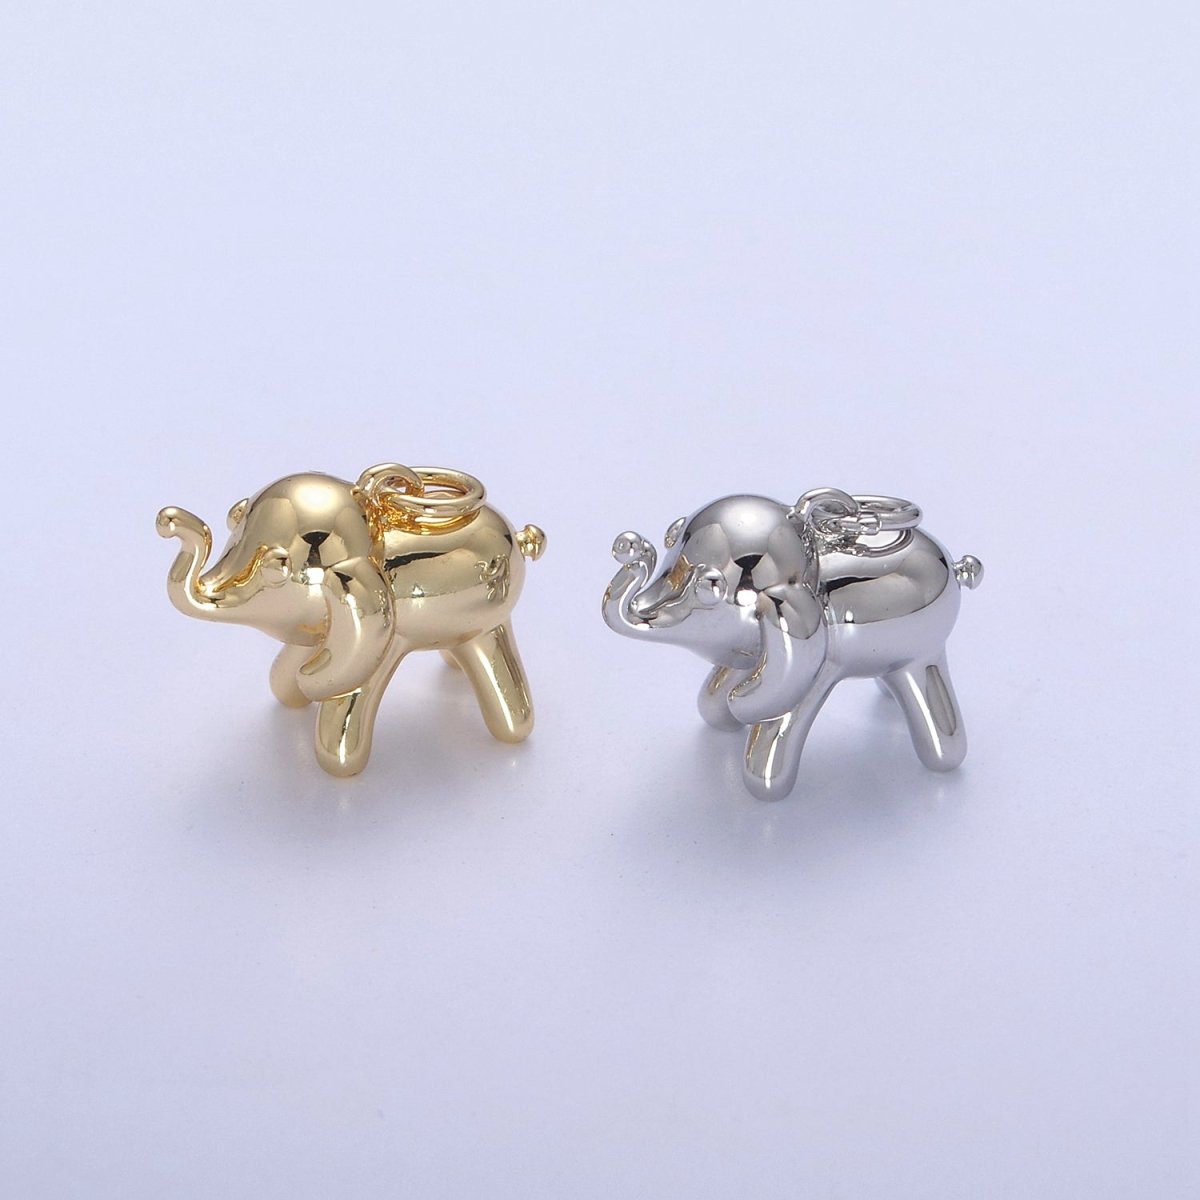 Dainty Gold Filled Elephant Charm Silver Wild Animal Safari Charm N-373 N-374 - DLUXCA